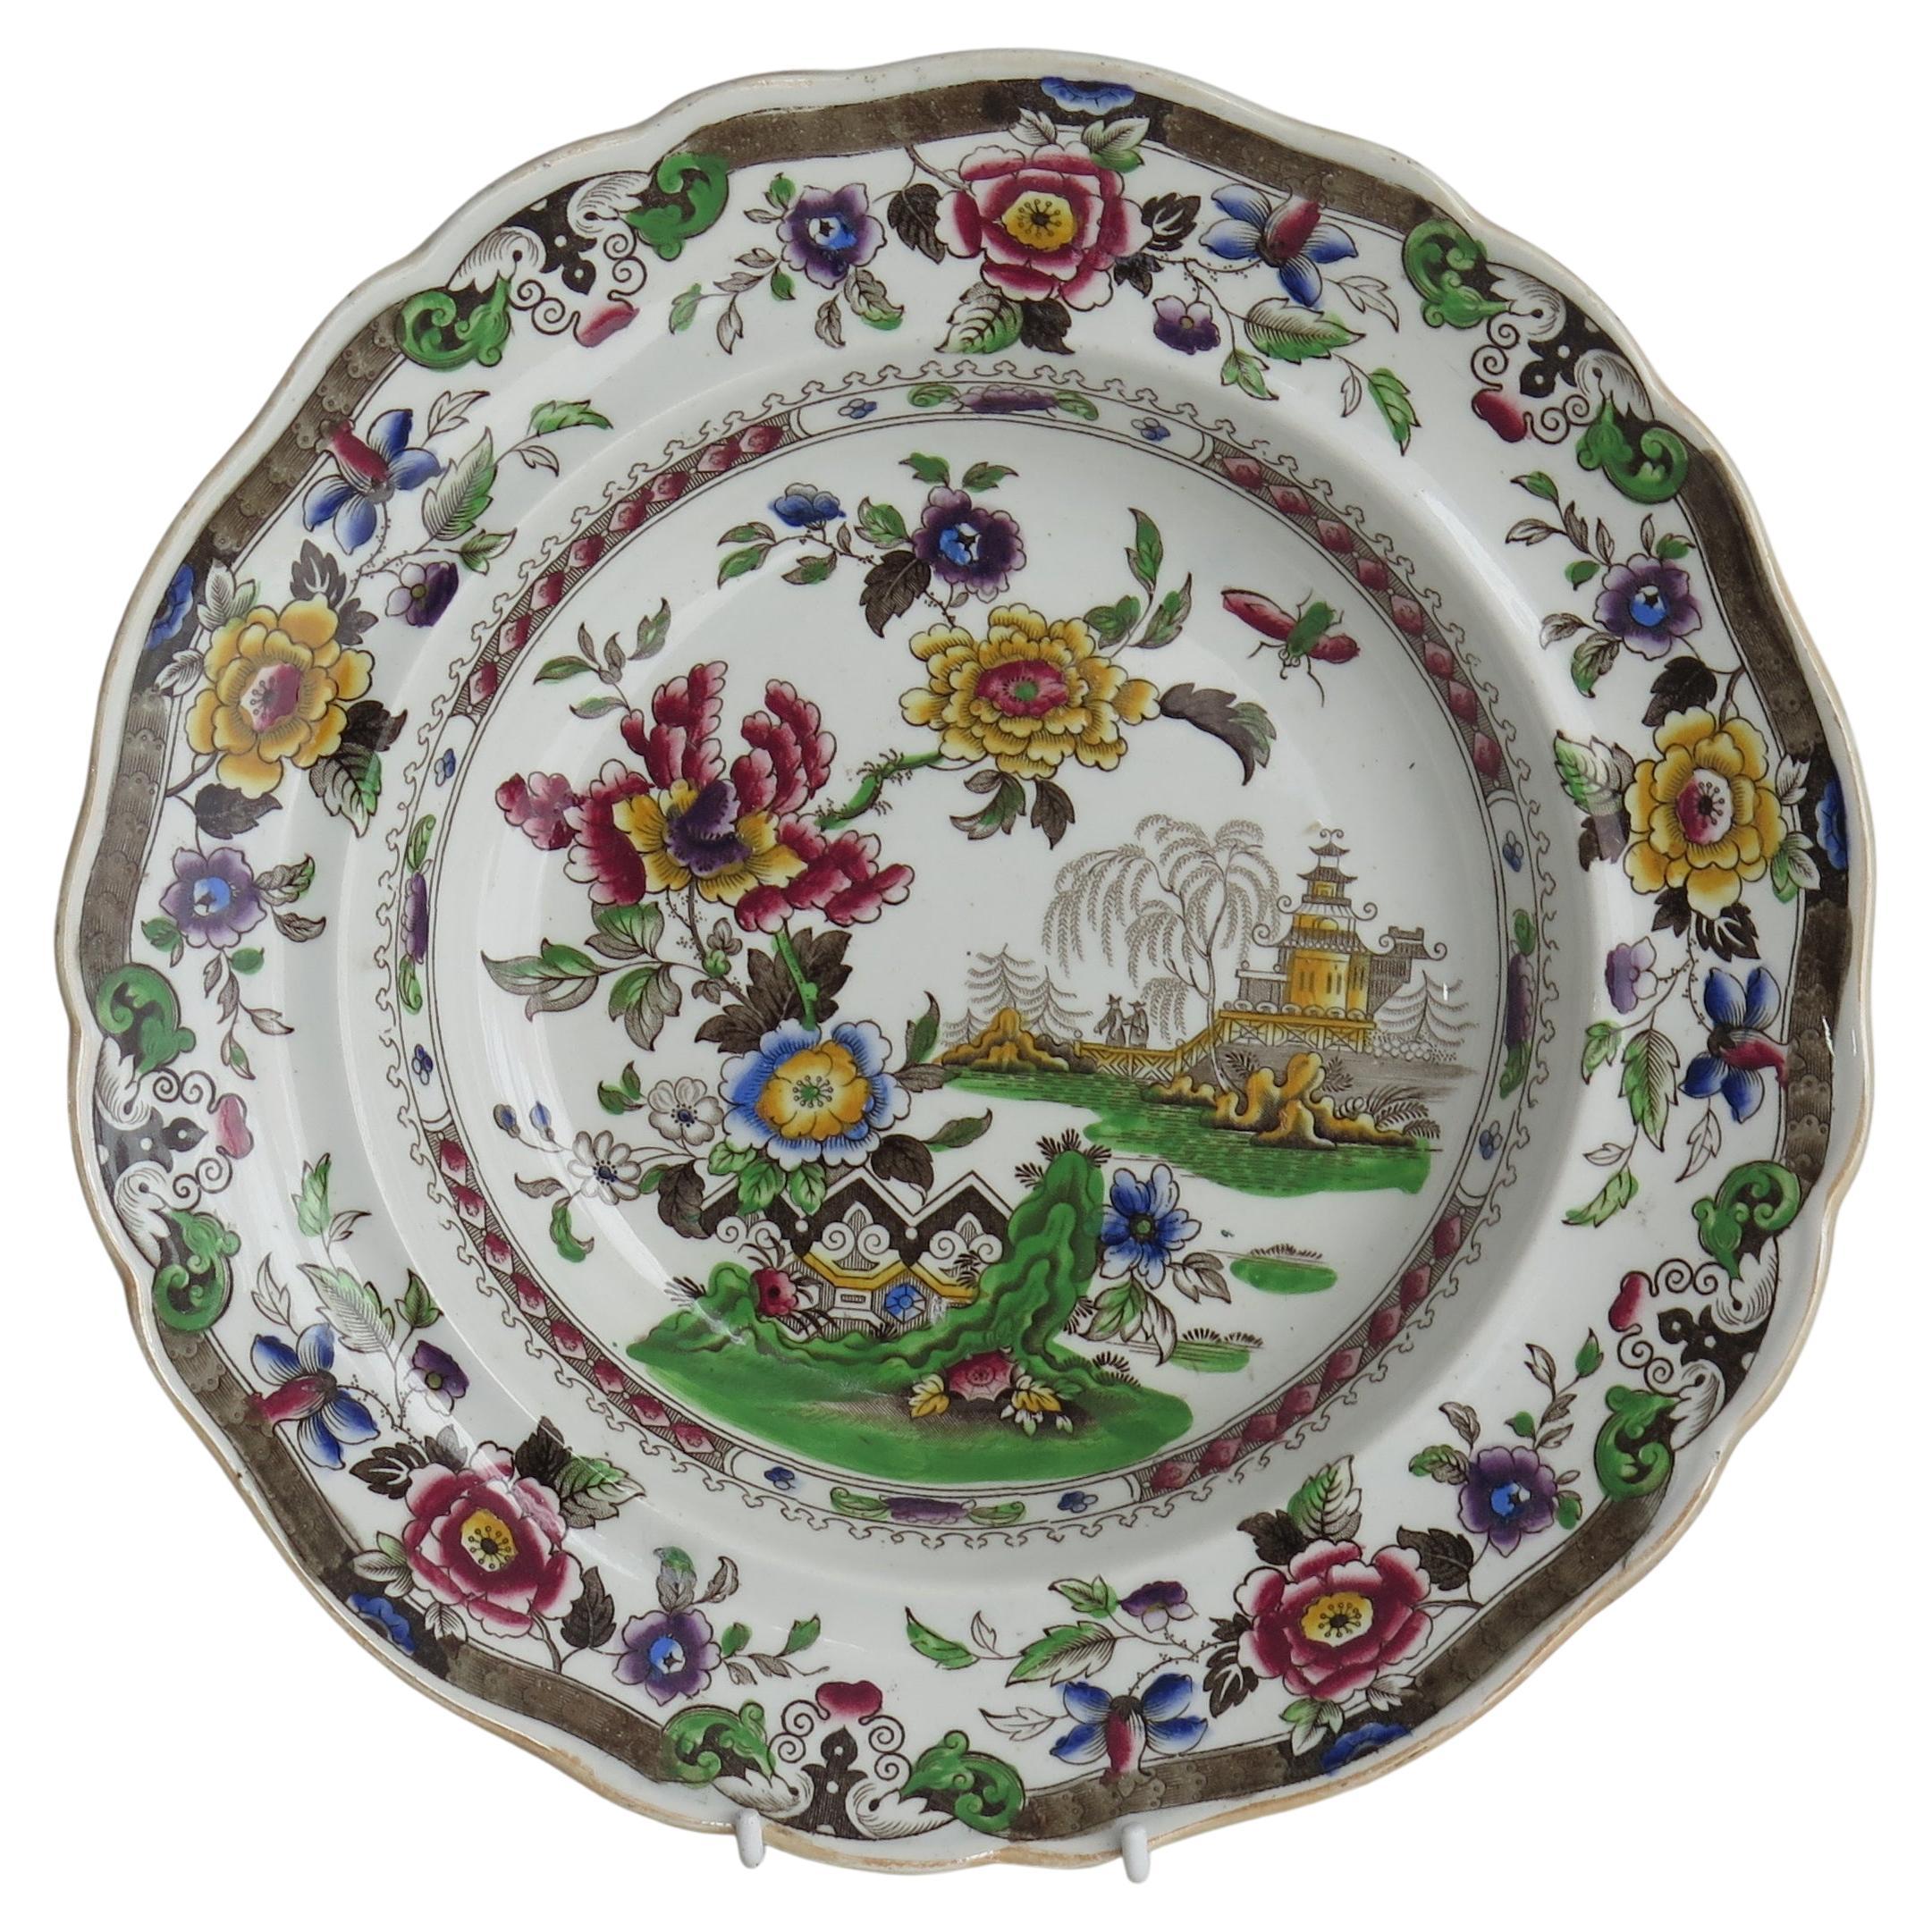 Suppenschale oder Teller Keramik von Zachariah Boyle mit chinesischem Blumenmuster, ca. 1825